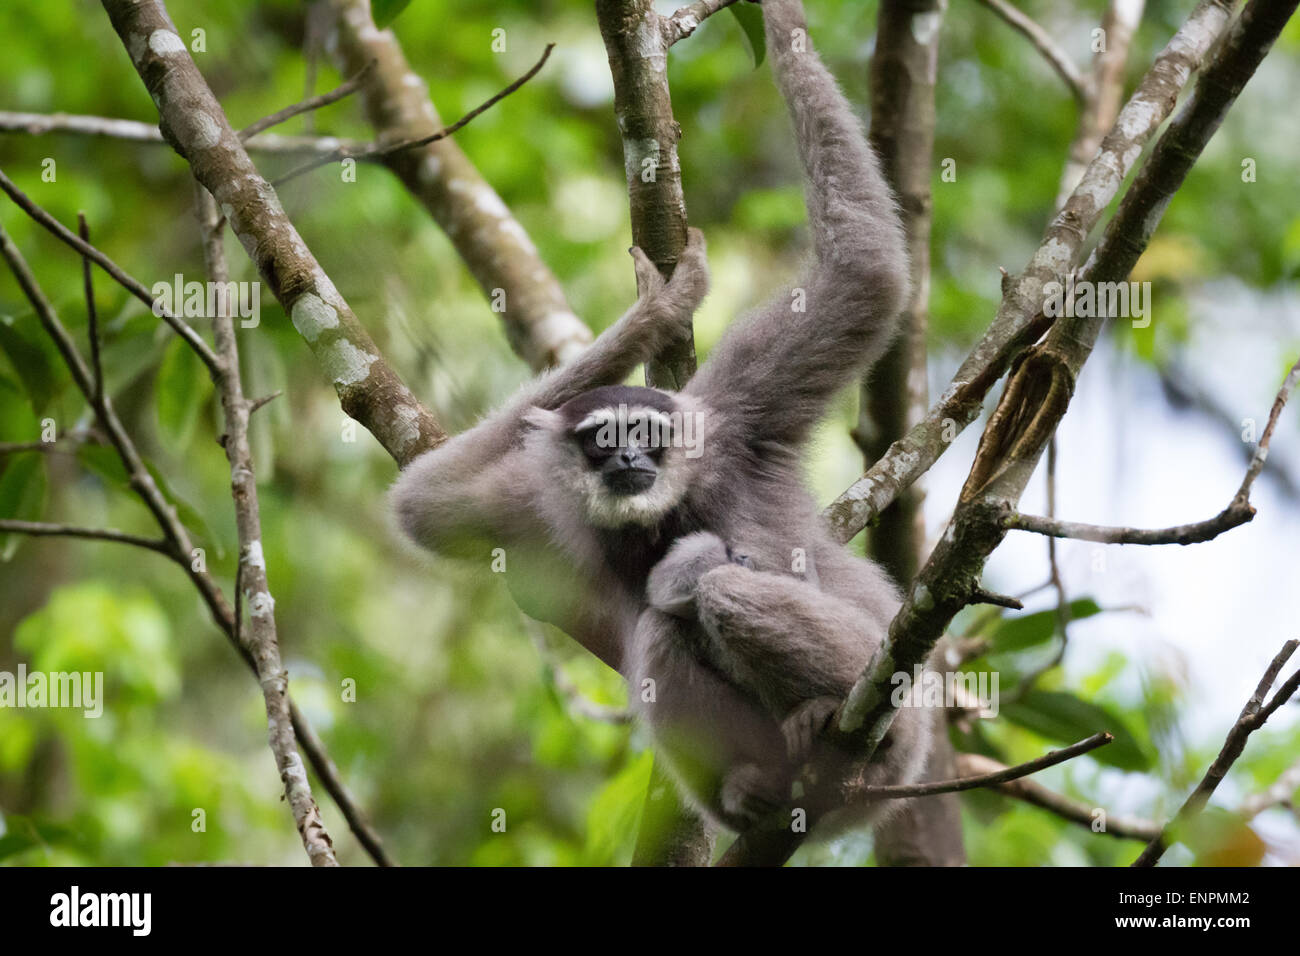 Eine weibliche Einzelperson des Javanischen Gibbons (Hylobates moloch, silbrig Gibbon), die ein Kleinkind trägt, während sie im Gunung Halimun Salak National Park auf Nahrungssuche ist. Stockfoto